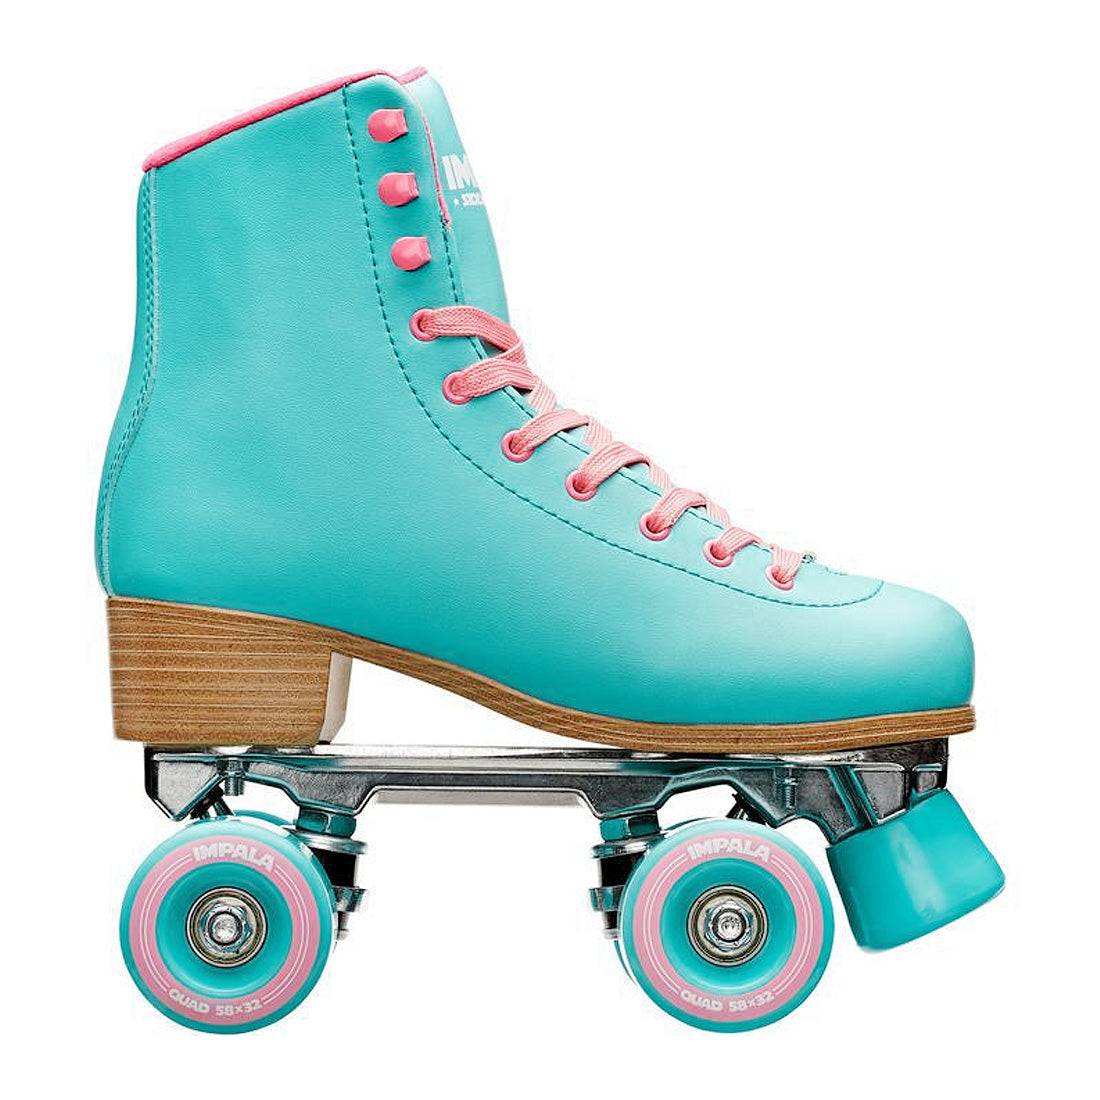 Impala Sidewalk - Aqua Roller Skates